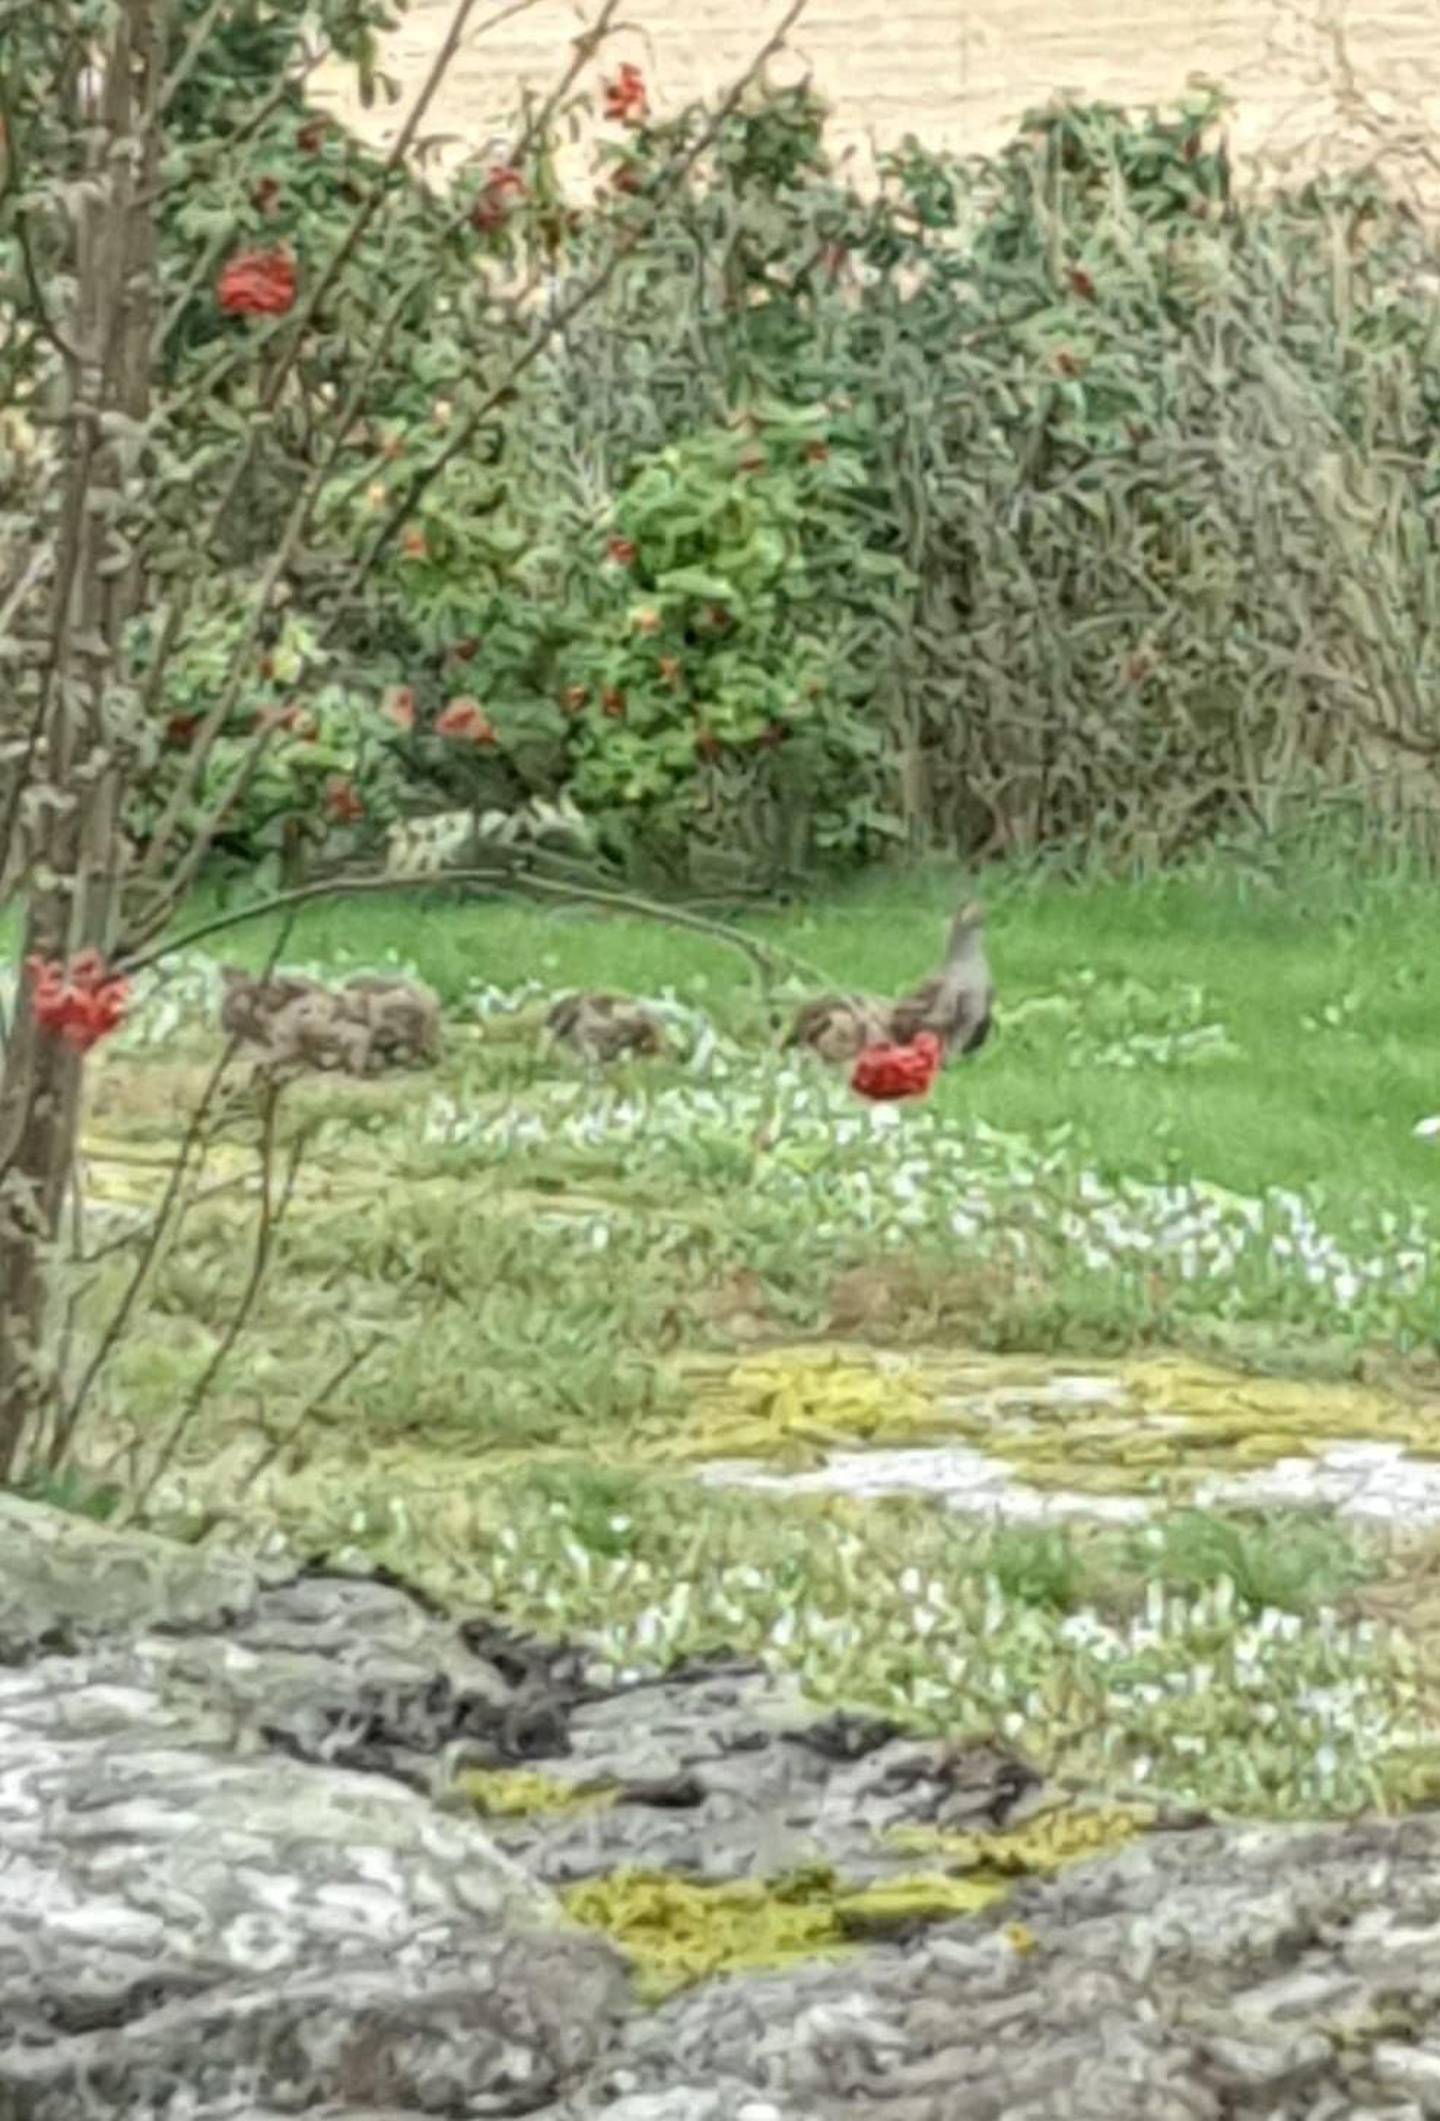 Rapphøne med kyllinger observert i en hage i Råde sommeren 2020.